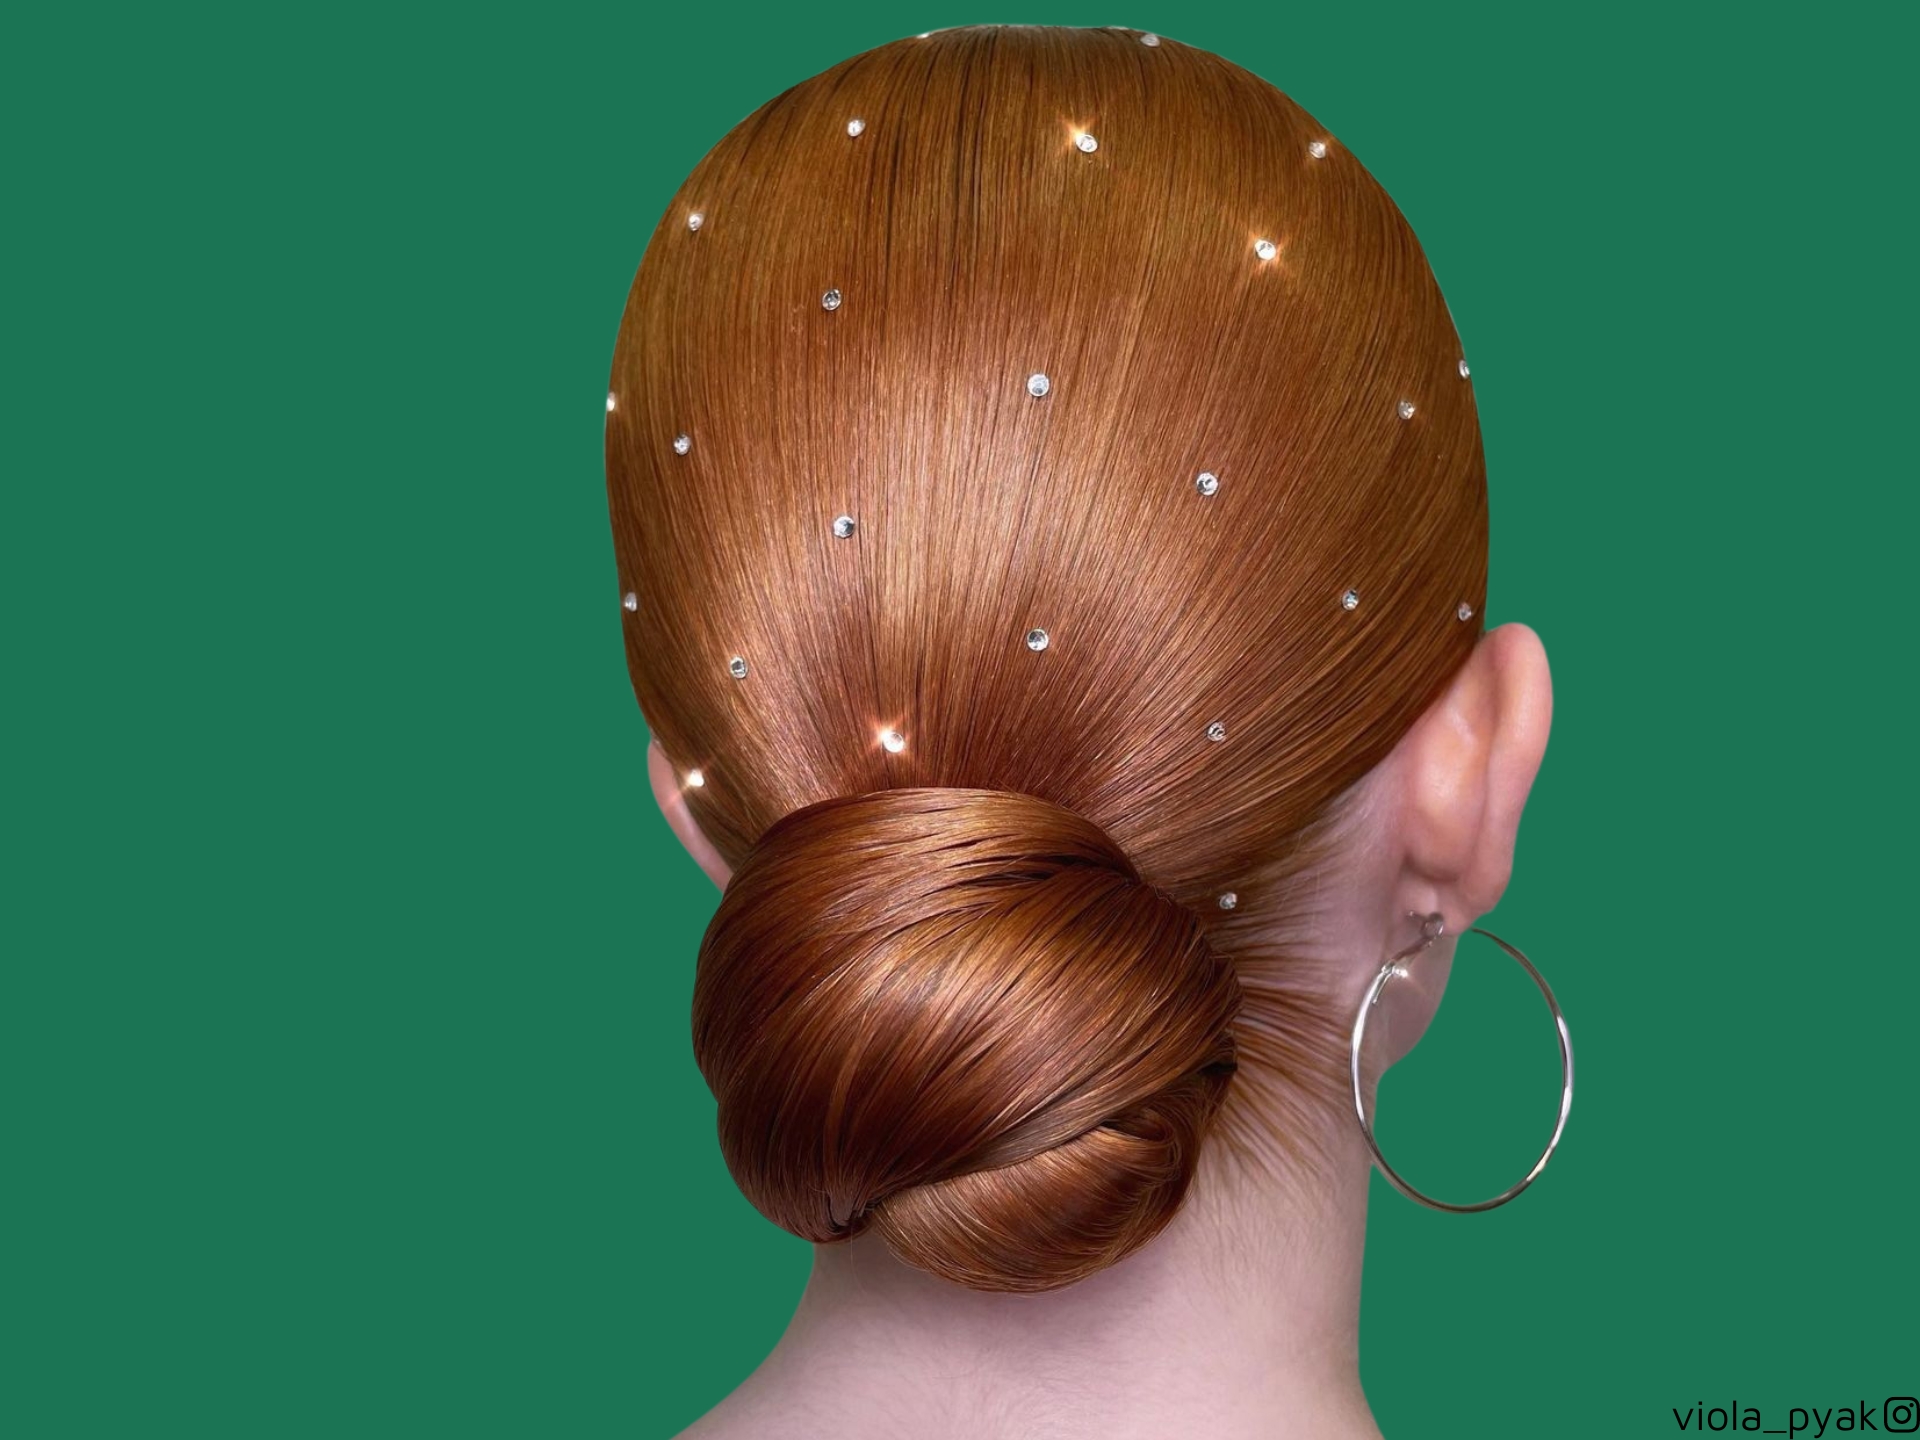 22 aggiornamenti epici per il ballo di fine anno, per assicurarsi che i capelli siano brillanti come il vestito.